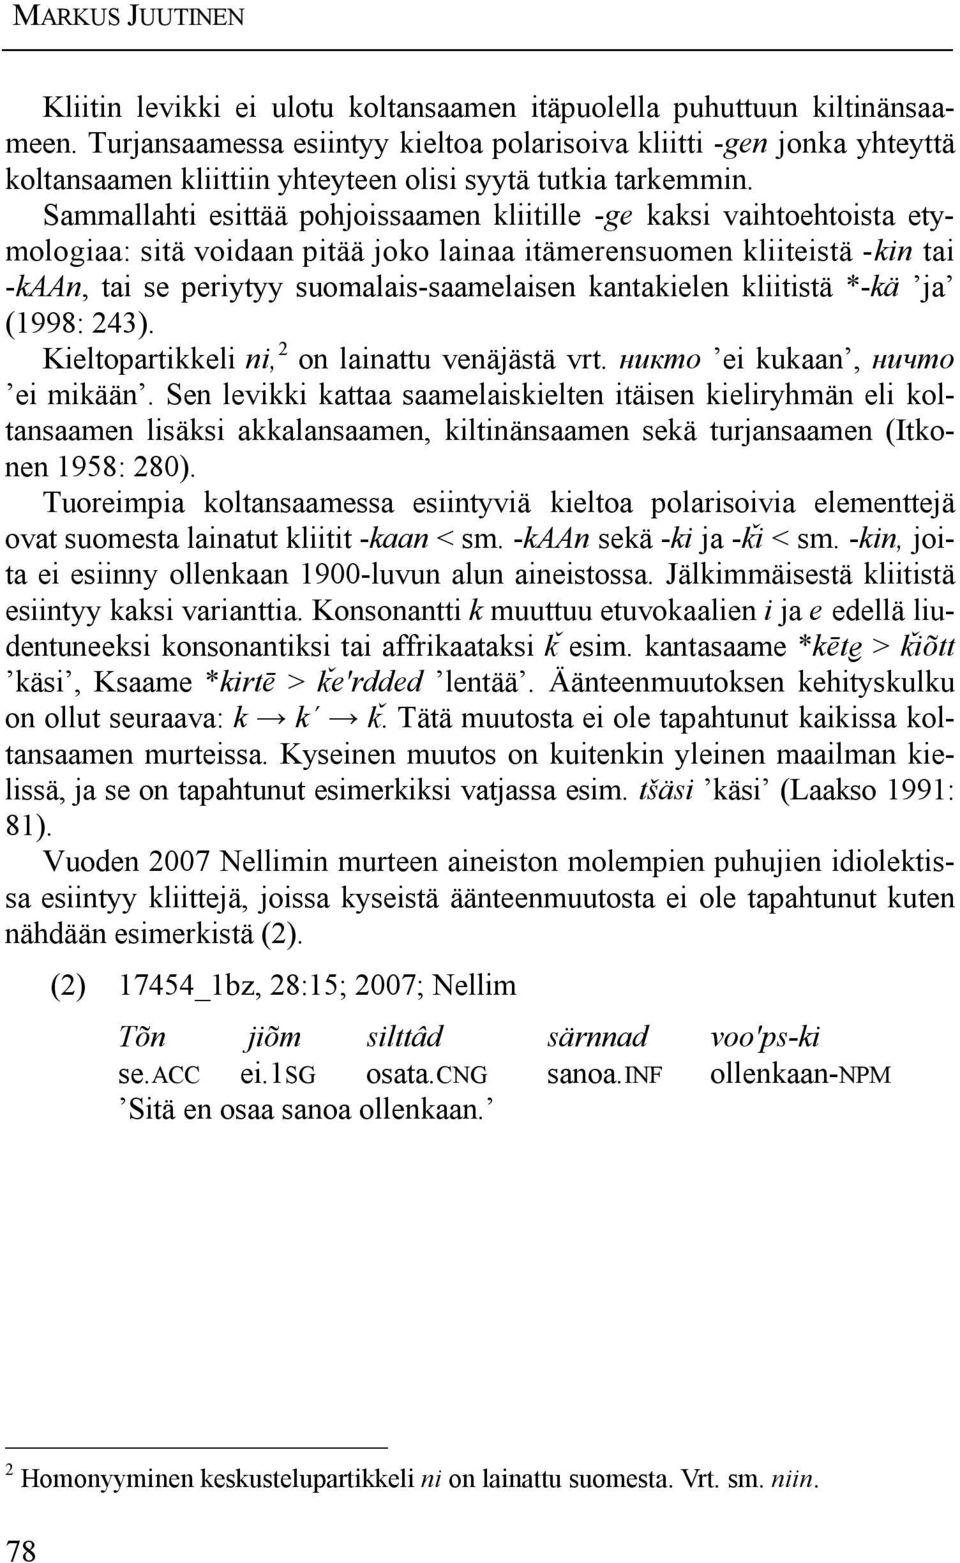 Sammallahti esittää pohjoissaamen kliitille -ge kaksi vaihtoehtoista etymologiaa: sitä voidaan pitää joko lainaa itämerensuomen kliiteistä -kin tai -kaan, tai se periytyy suomalais-saamelaisen